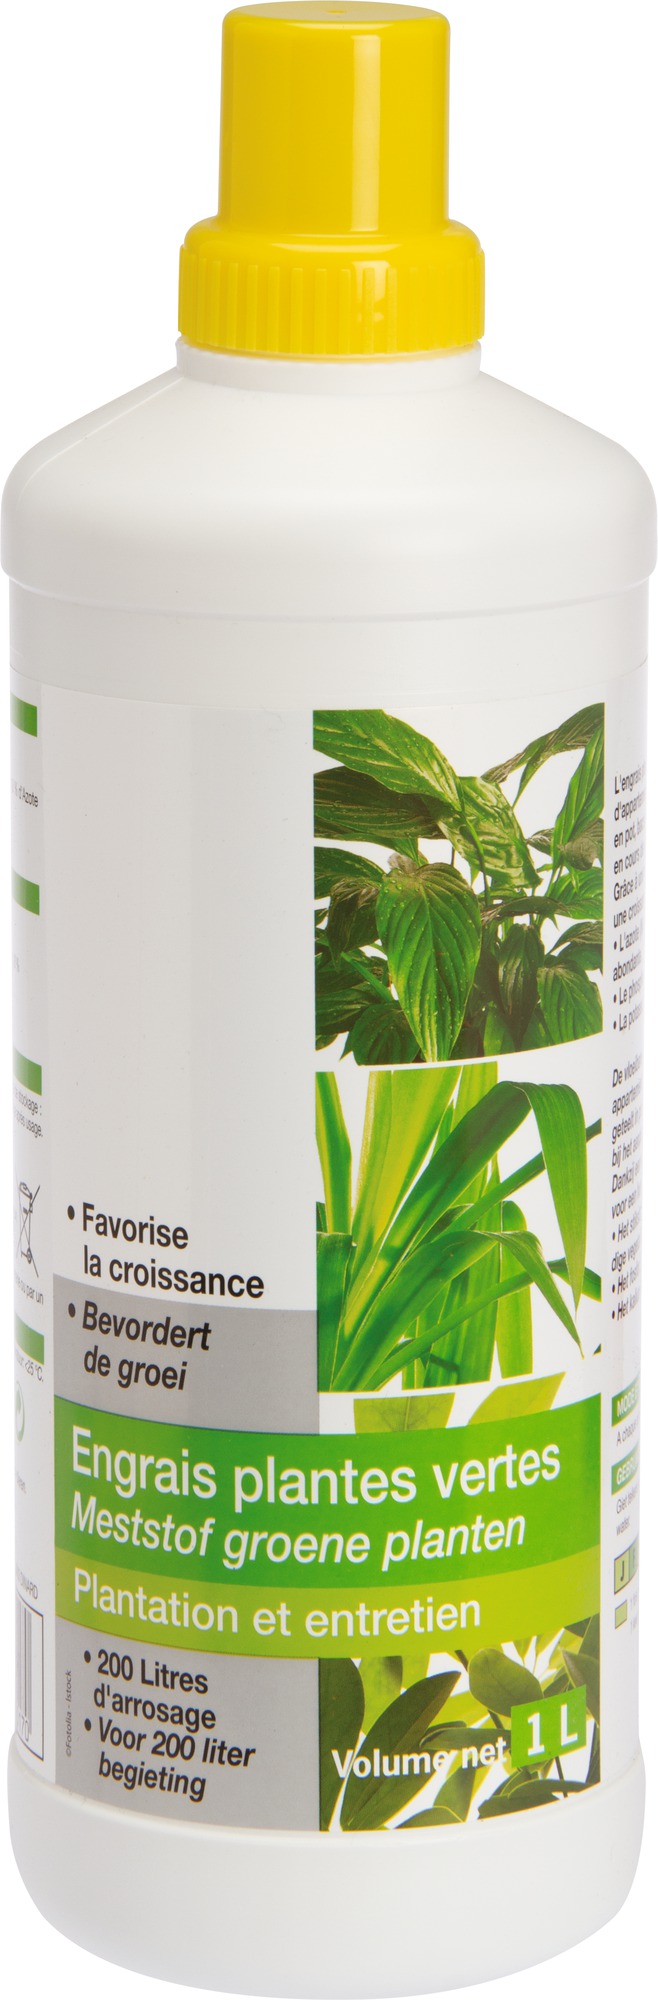 Engrais plantes vertes liquide Florendi - Bouteille 1 l